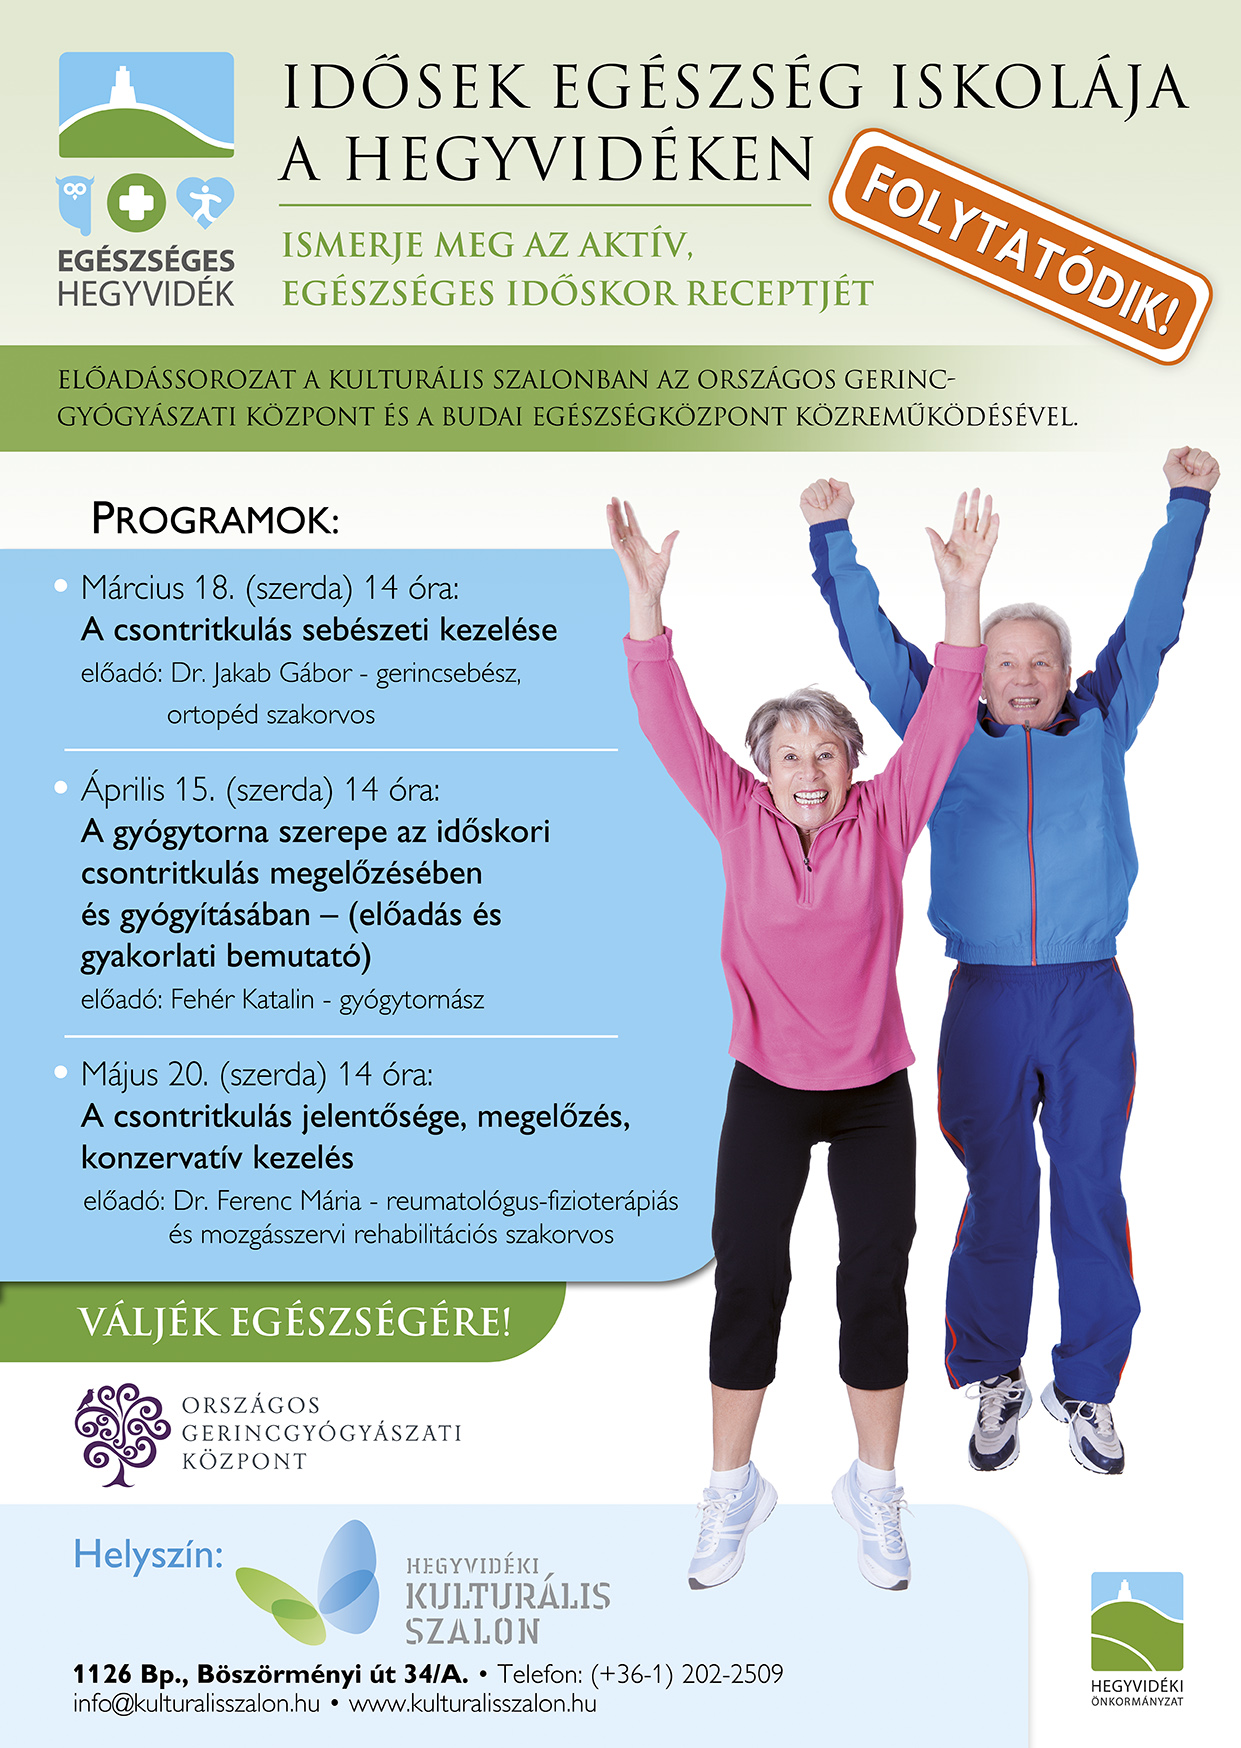 Országos Gerincgyógyászati Központ által rendezett Idősek Egészségiskolája nevű program plakátja. 